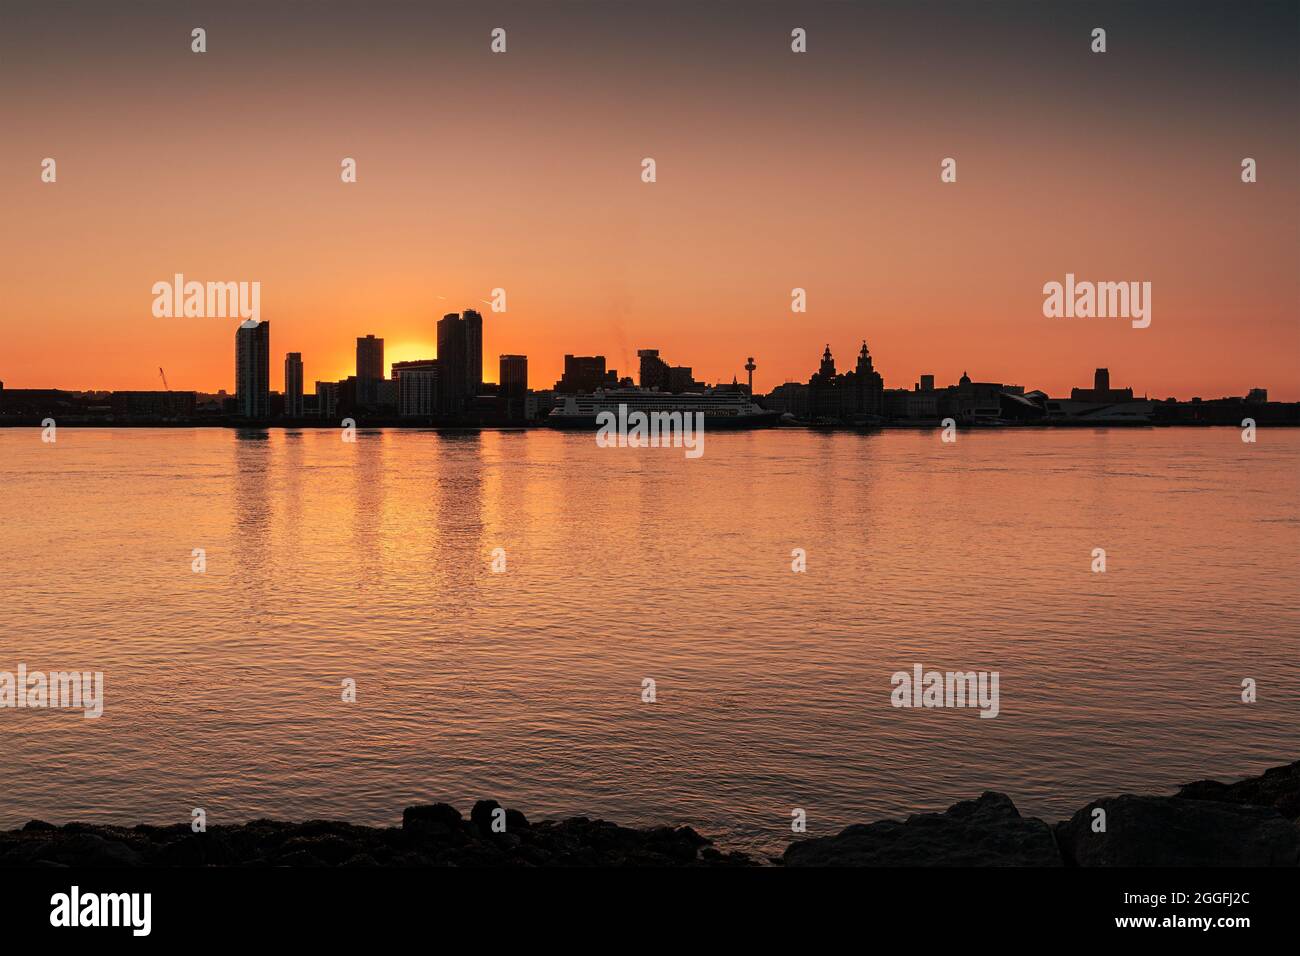 Liverpool, Royaume-Uni : gratte-ciel de bâtiments en front de mer au lever du soleil sur la rivière Mersey Banque D'Images